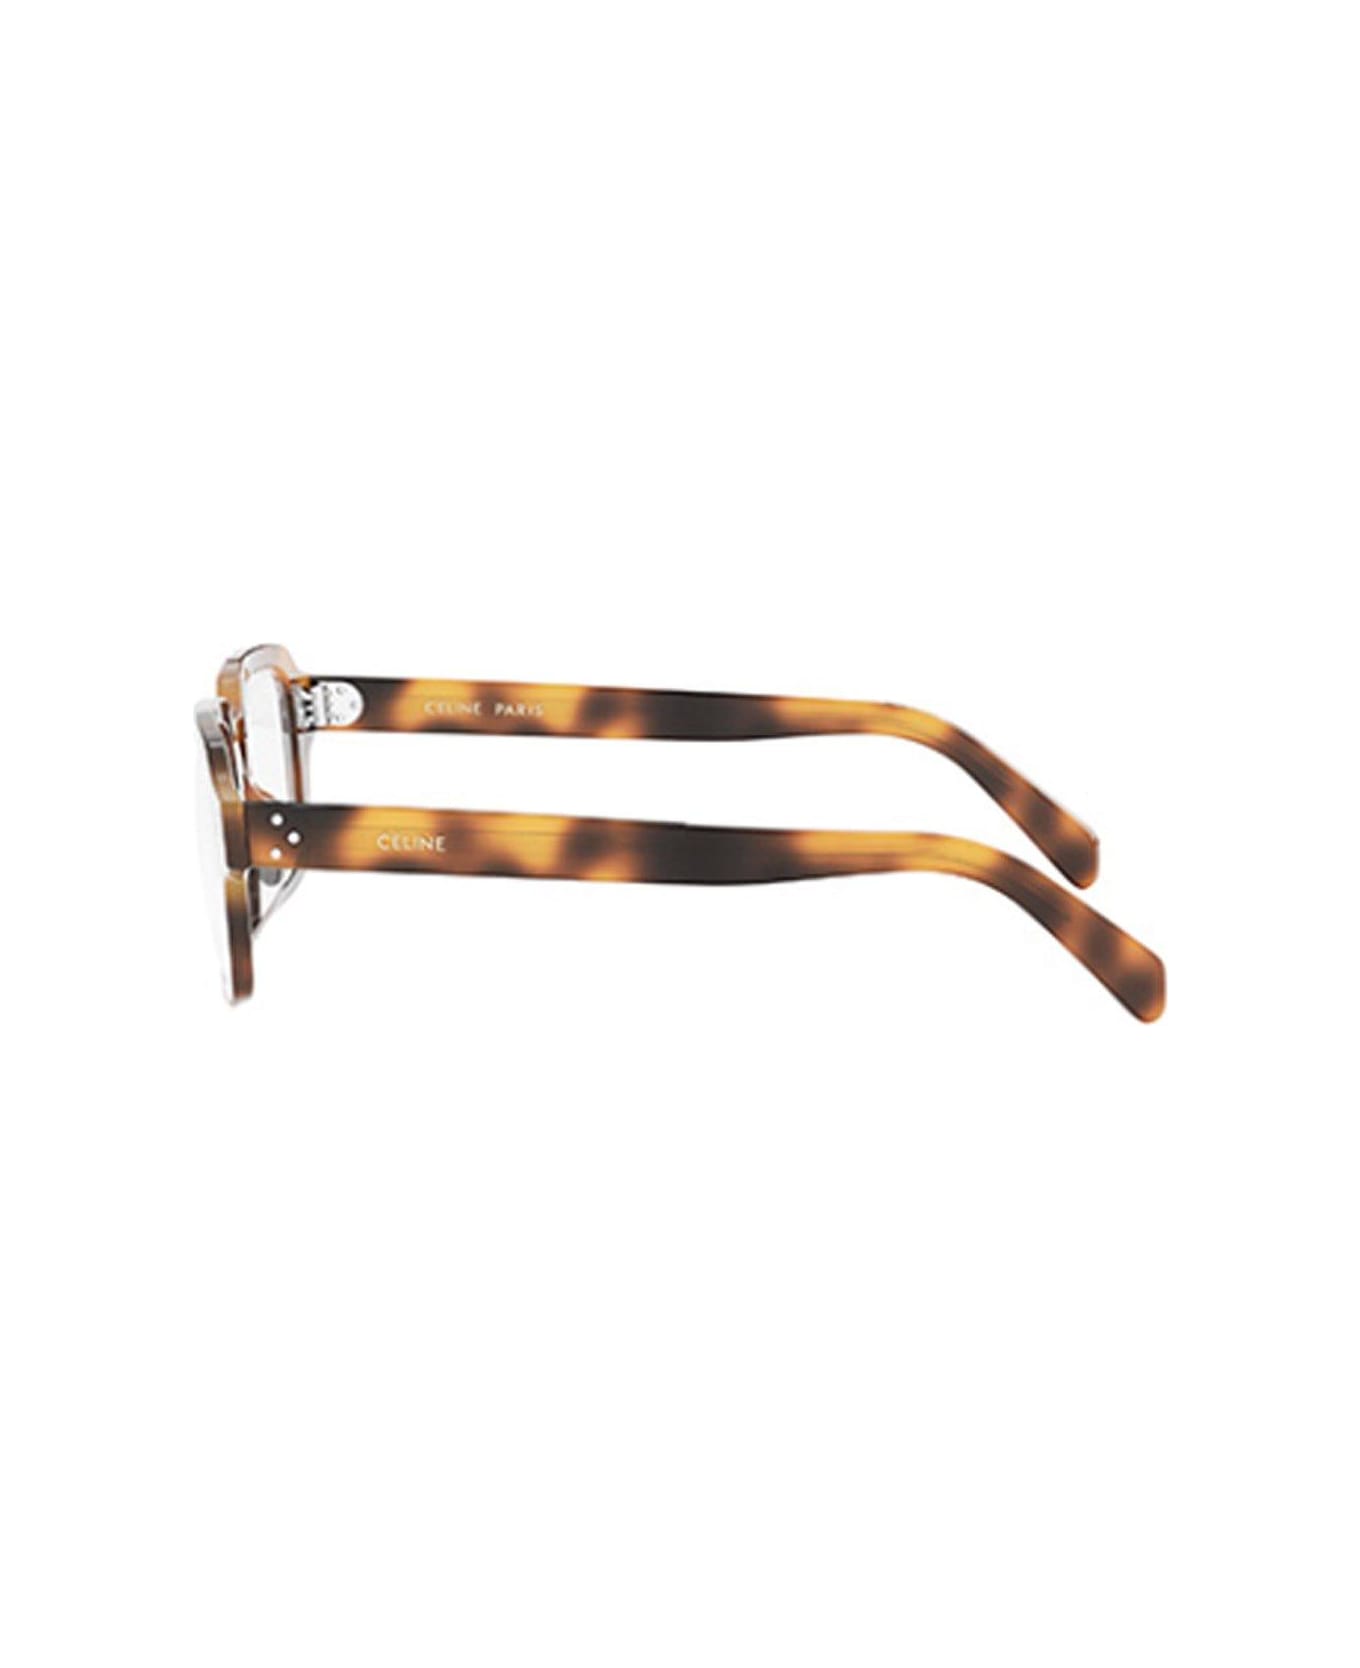 Celine Rectangular Frame Glasses - 053 アイウェア